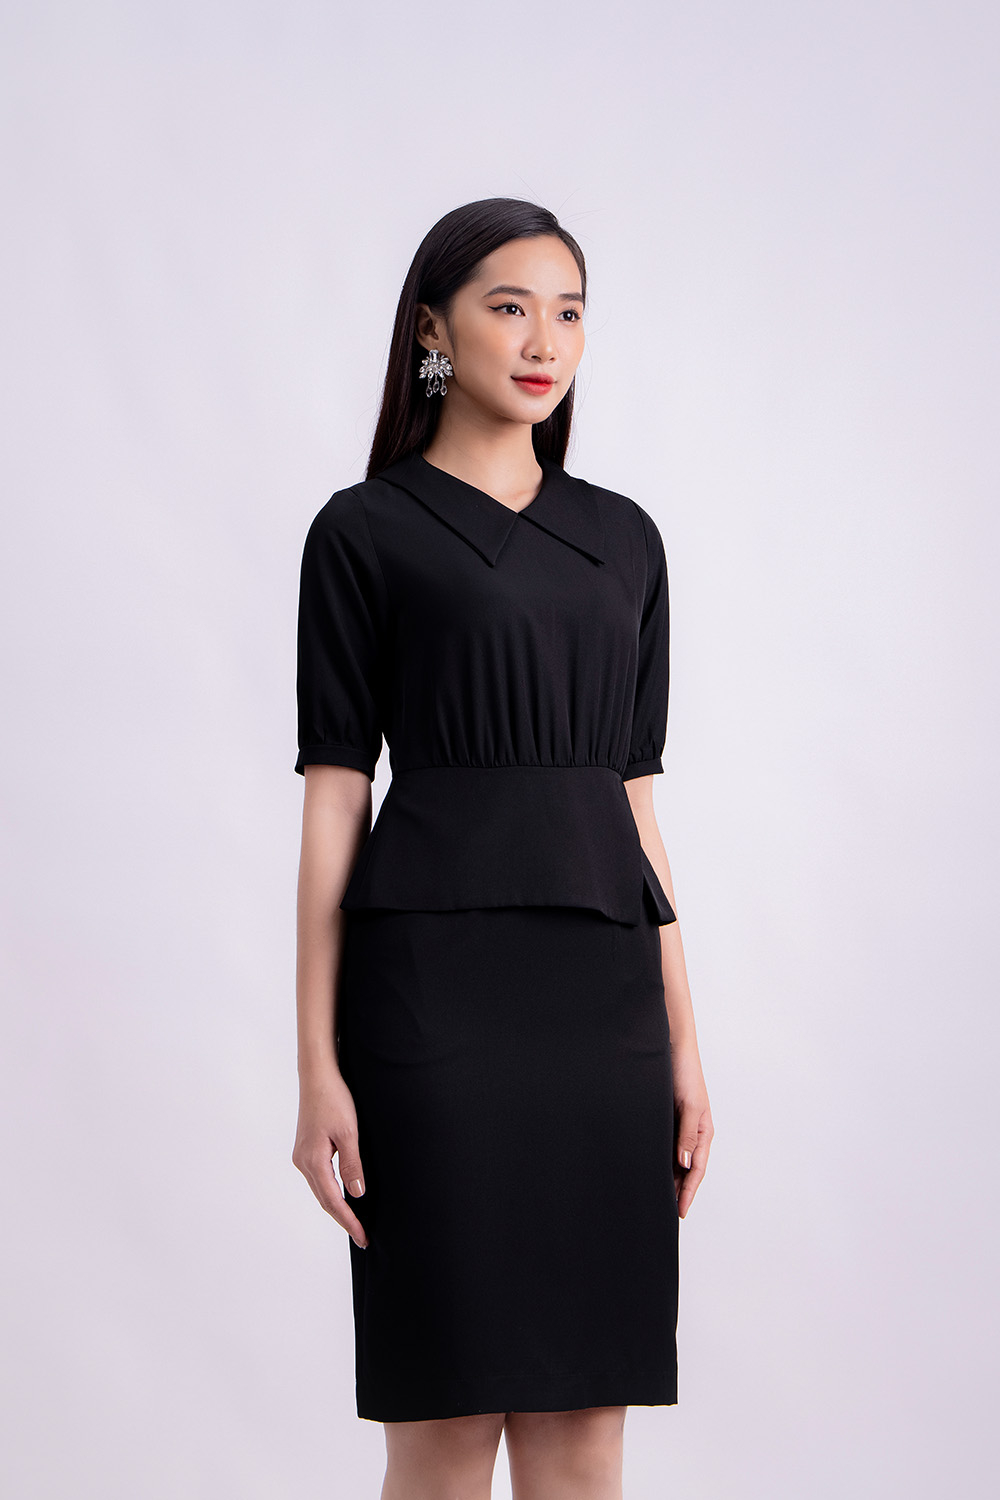 Đầm đen công sở phối peplum KK119-11 | Thời trang công sở K&K ...